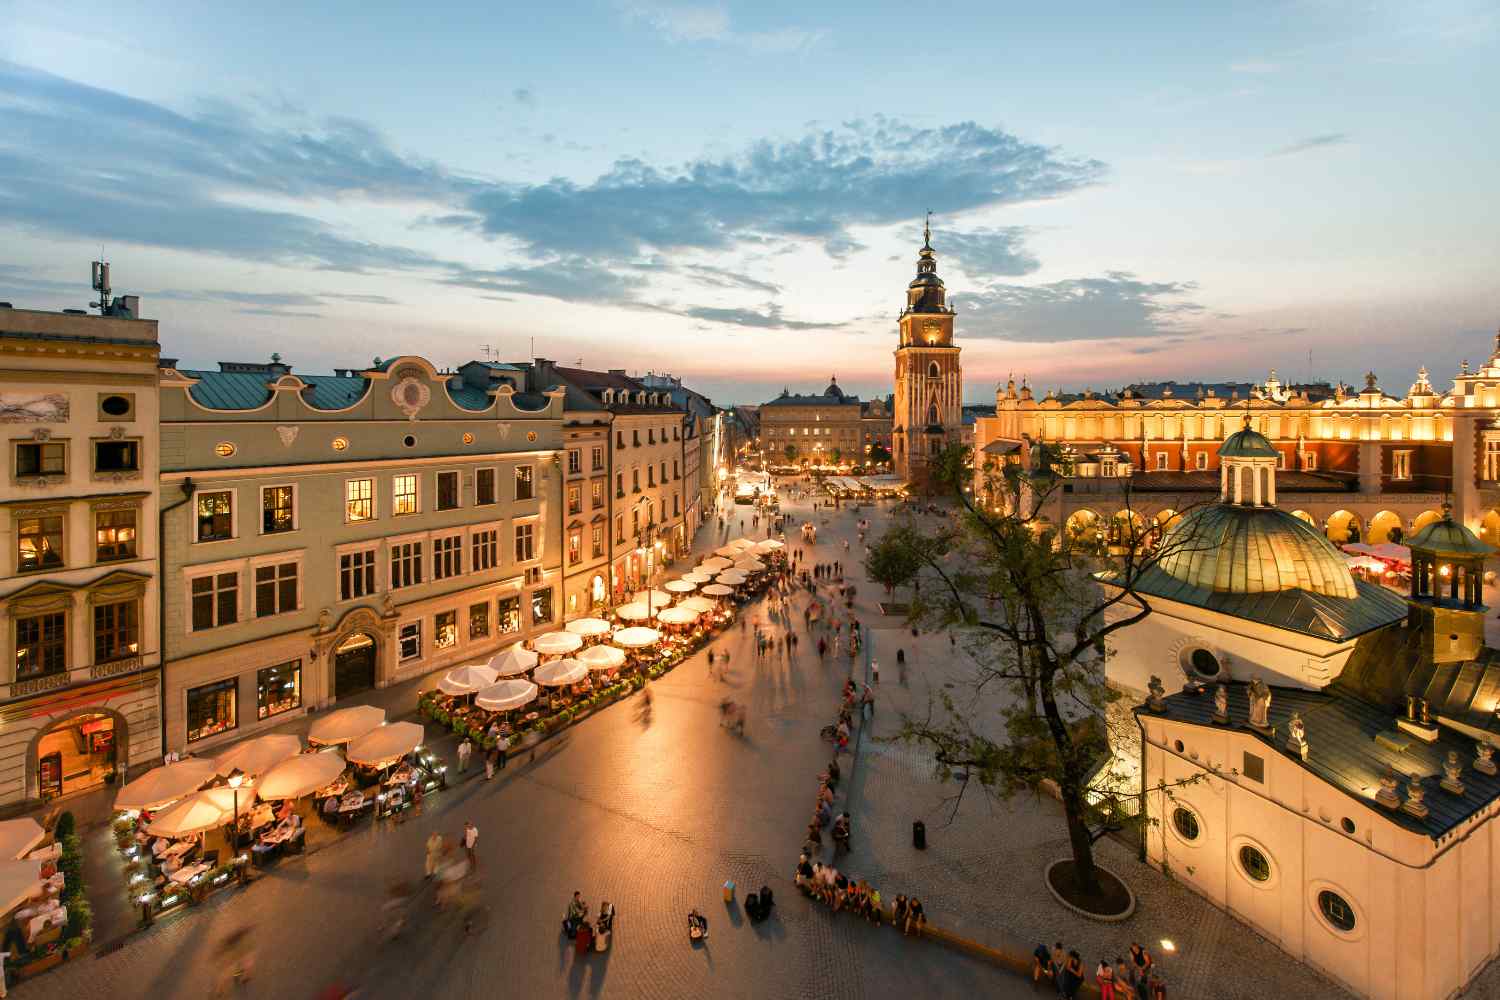 Romantic city of Krakow